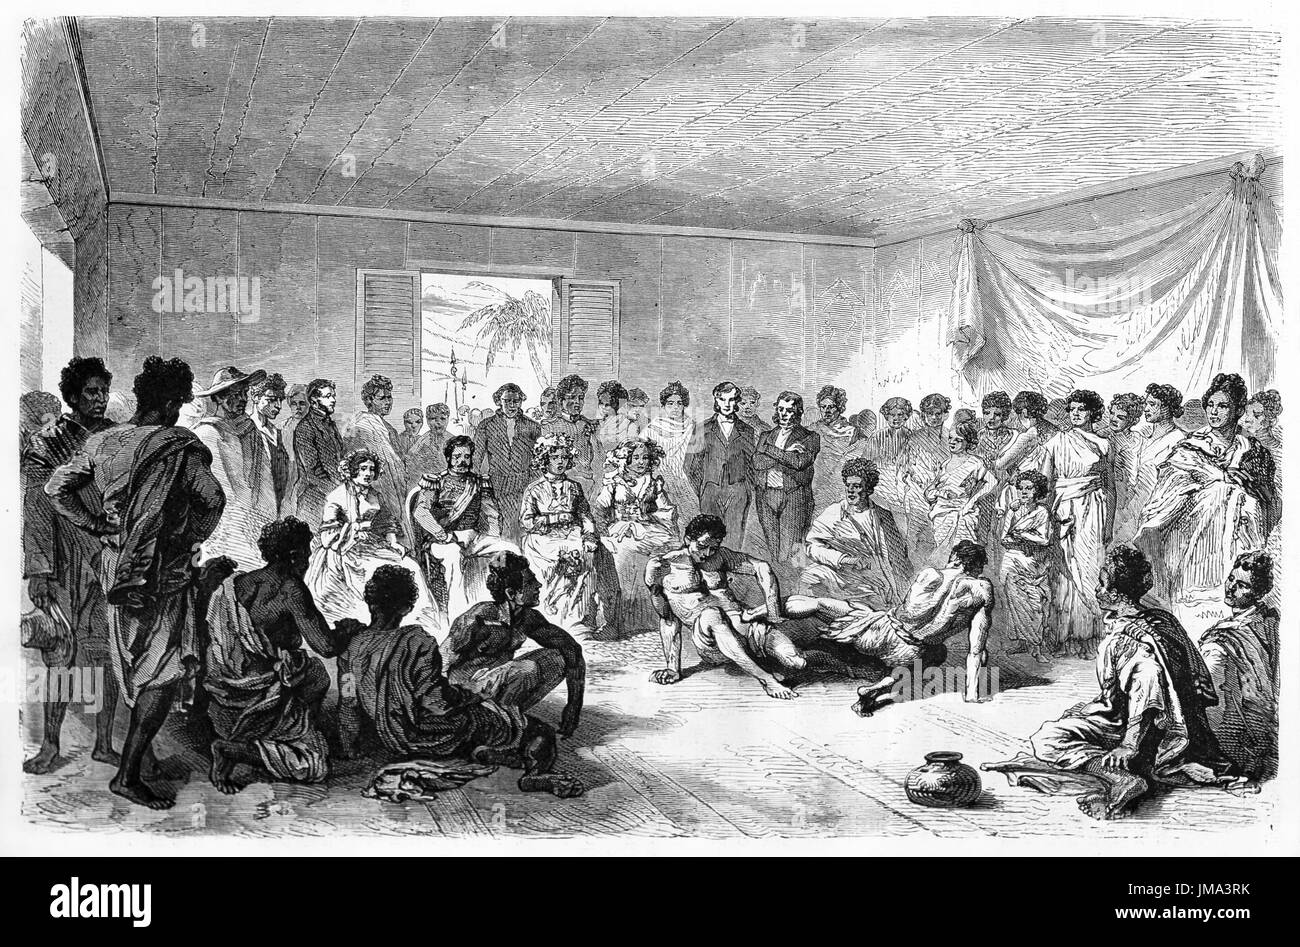 Les gens malgazés se rassemblent pour assister à un match de lutte à l'intérieur d'une grande salle. Art de style gravure de tons gris anciens par Bérard, le Tour du monde, 1861 Banque D'Images